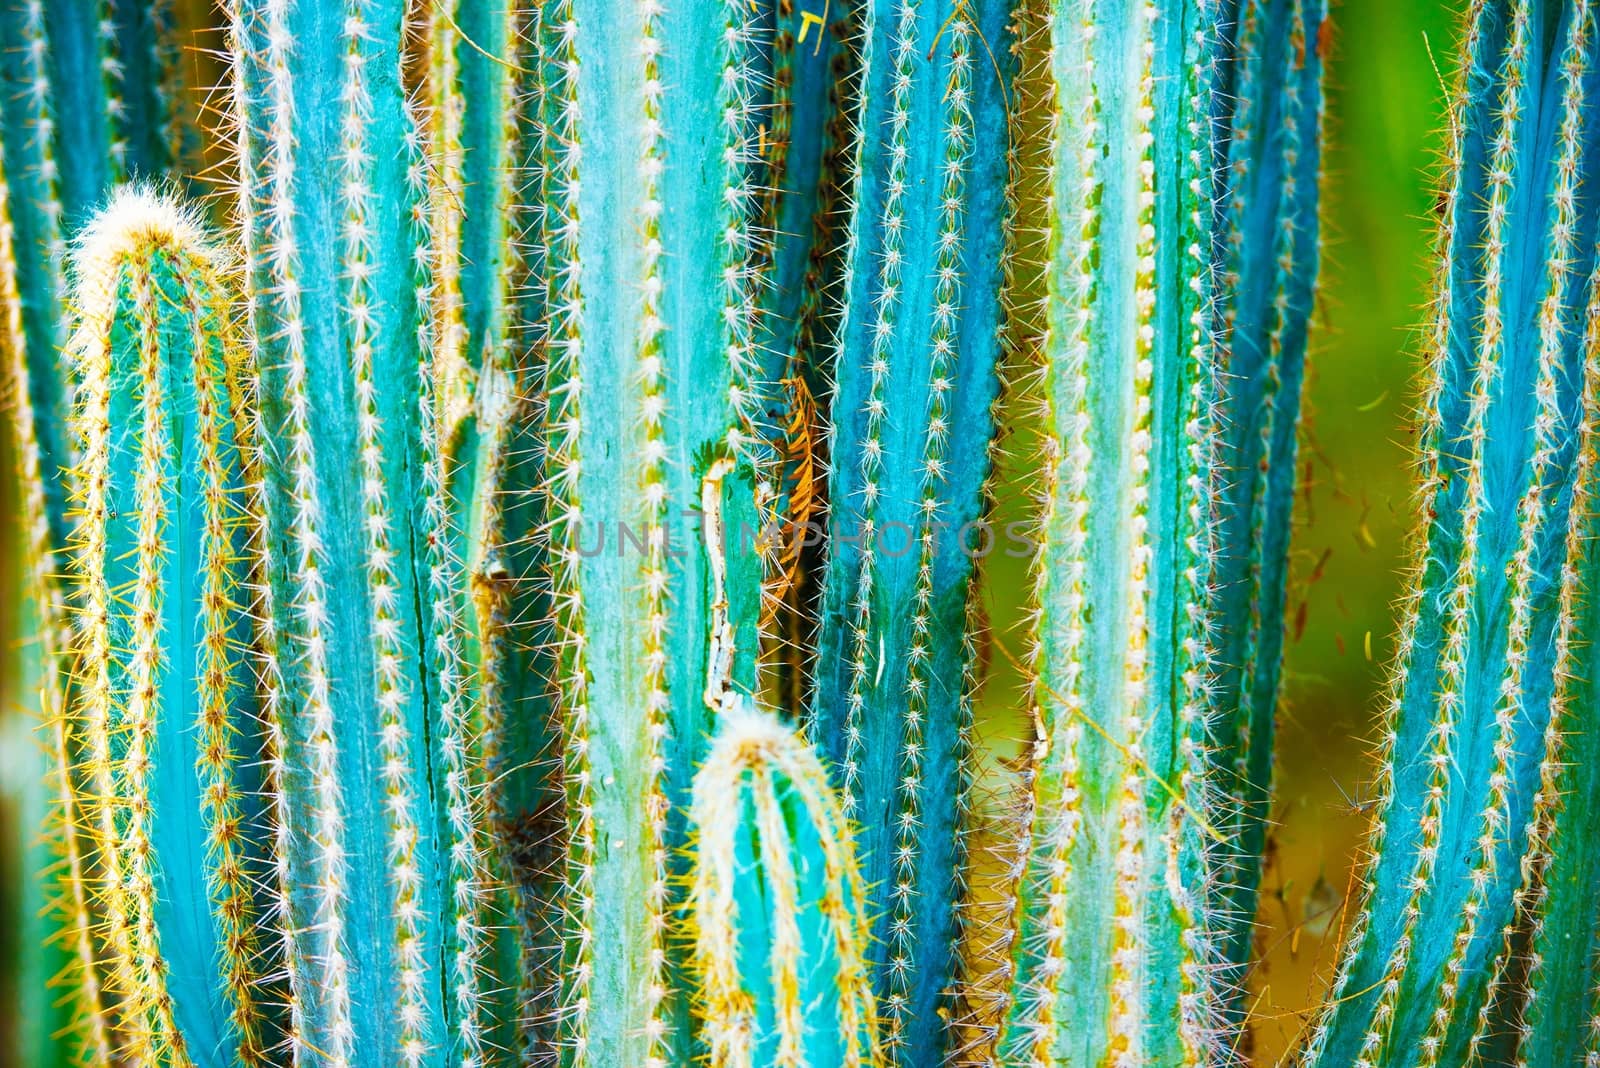 Cactus Specie Closeup Photo. California Cactuses.